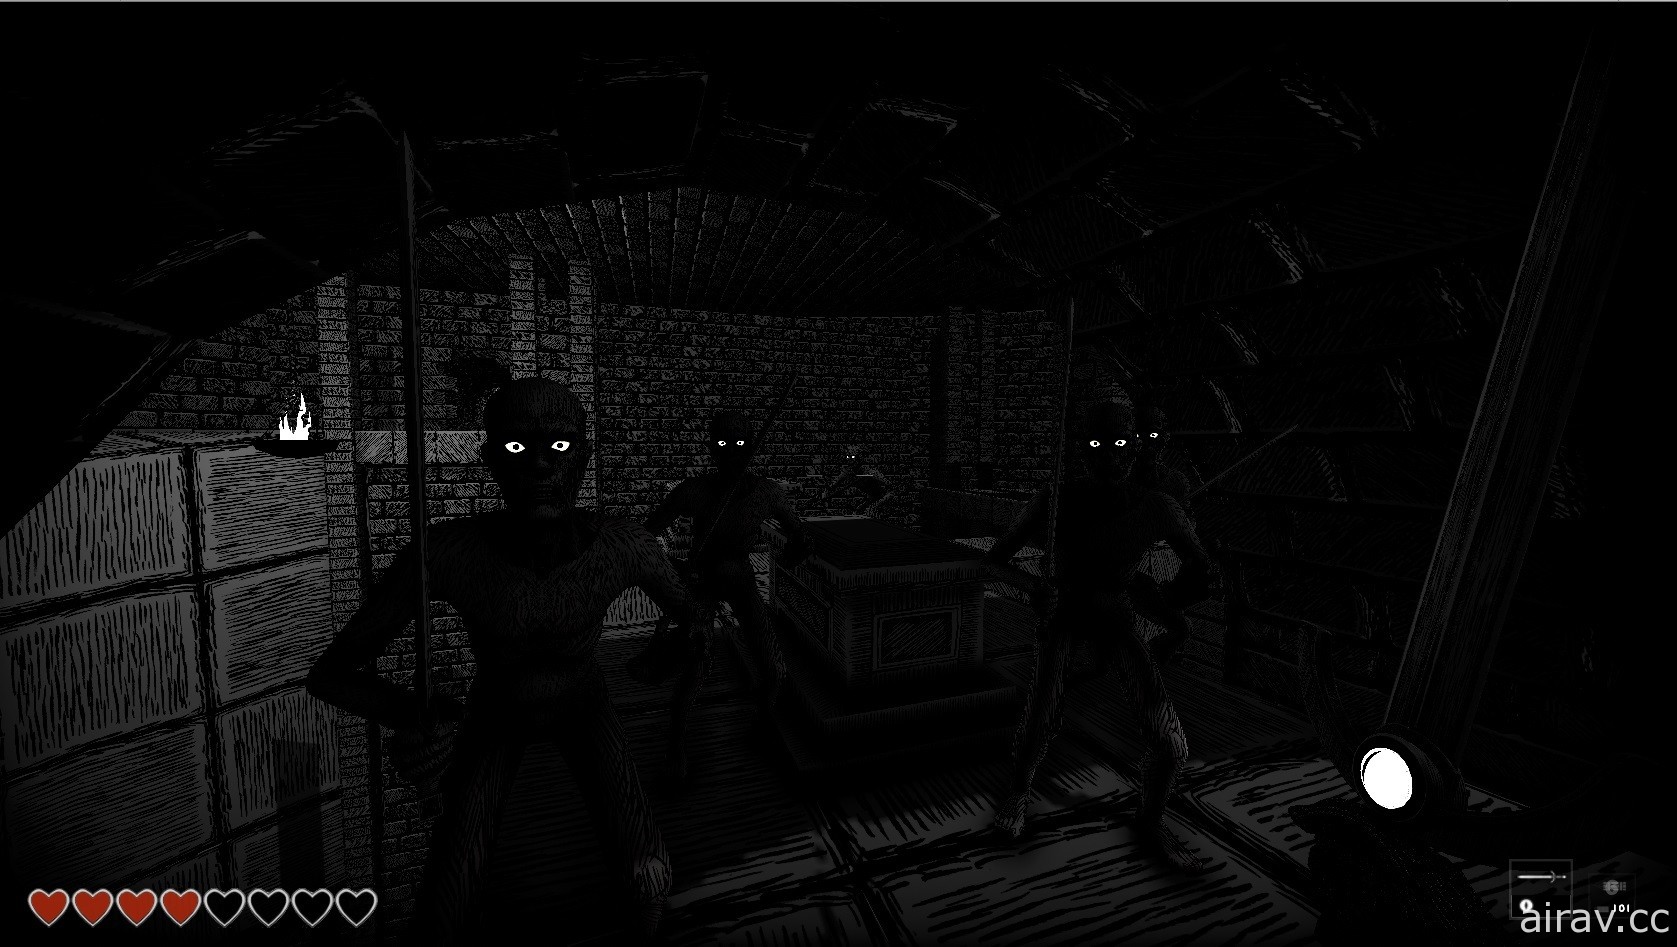 FPS 恐怖遊戲《亡者國度》今日在 Steam 上市 起身對抗亡者大軍